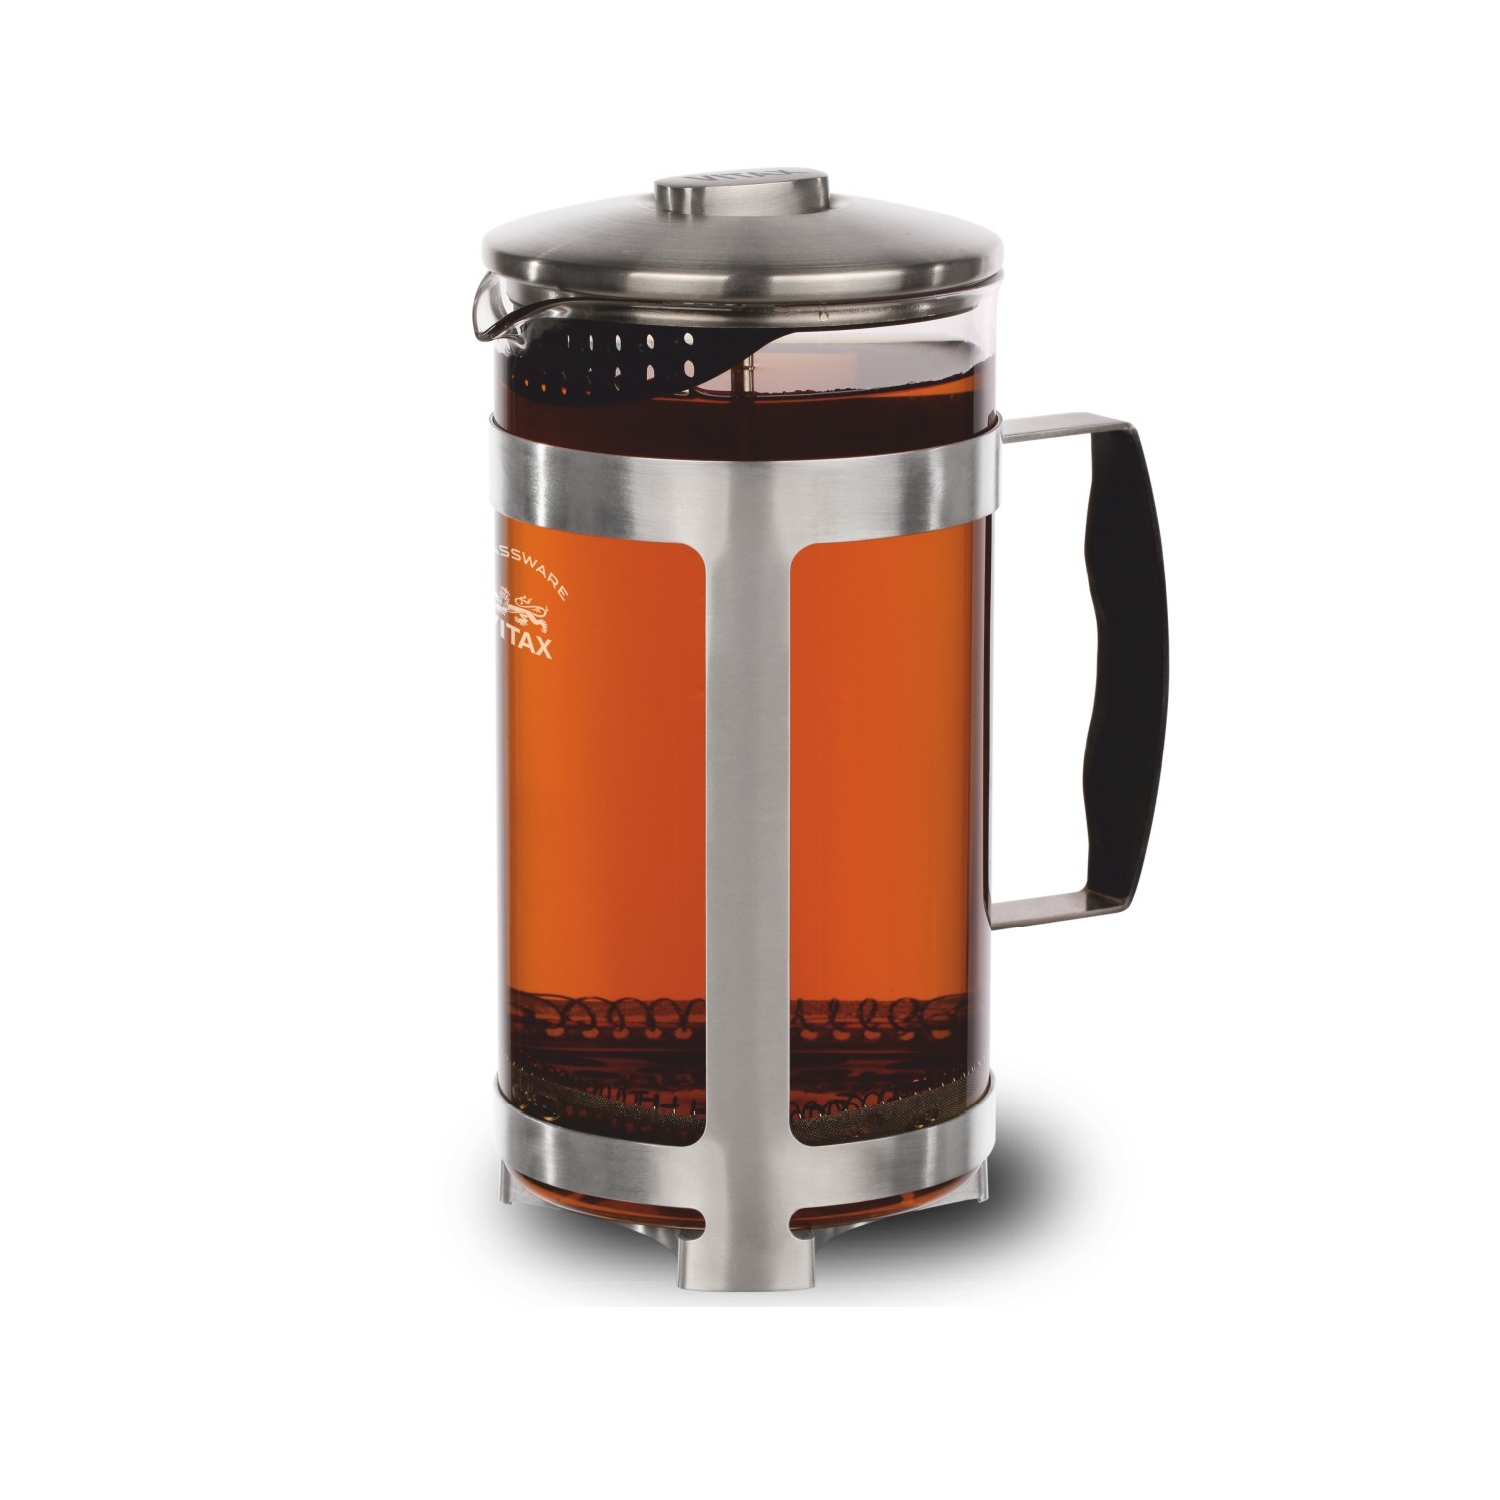 Френч-пресс Vitax объемом 1 литр для заваривания чая и приготовления молотого кофе - фото 1